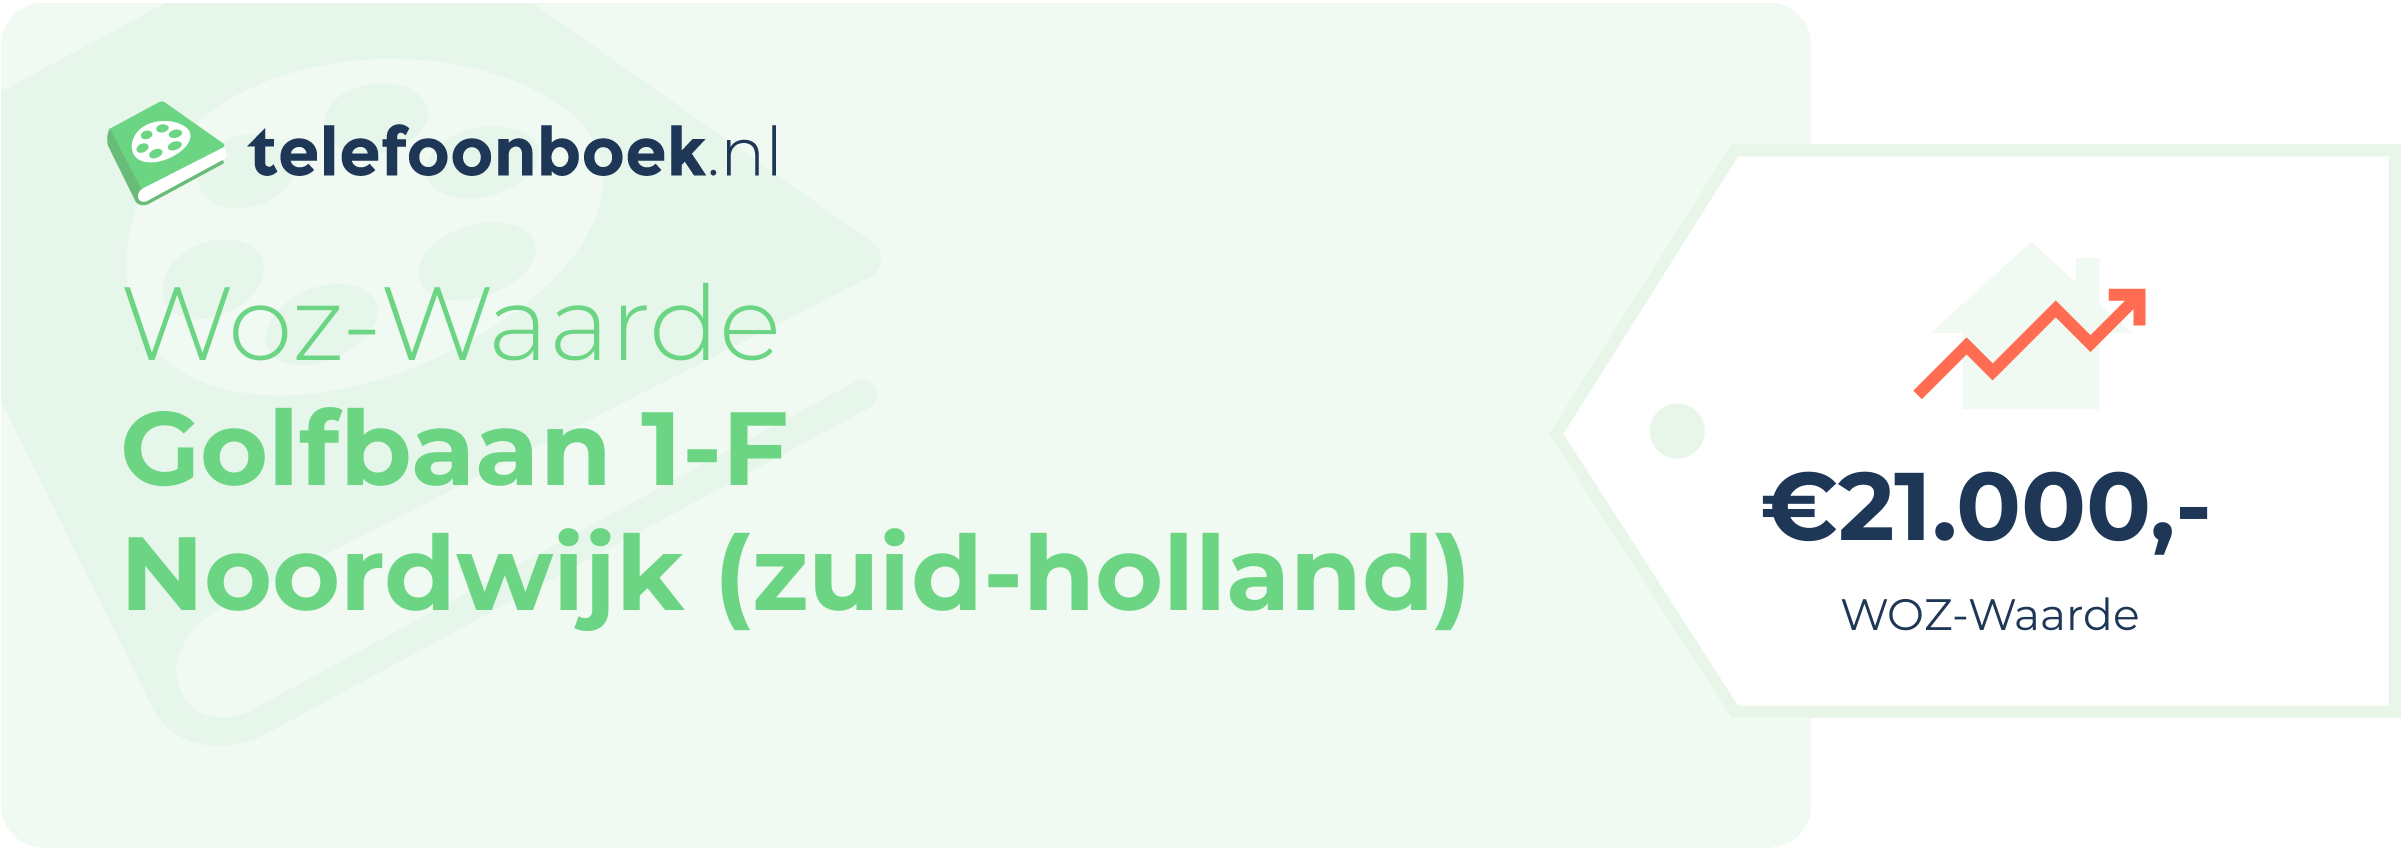 WOZ-waarde Golfbaan 1-F Noordwijk (Zuid-Holland)